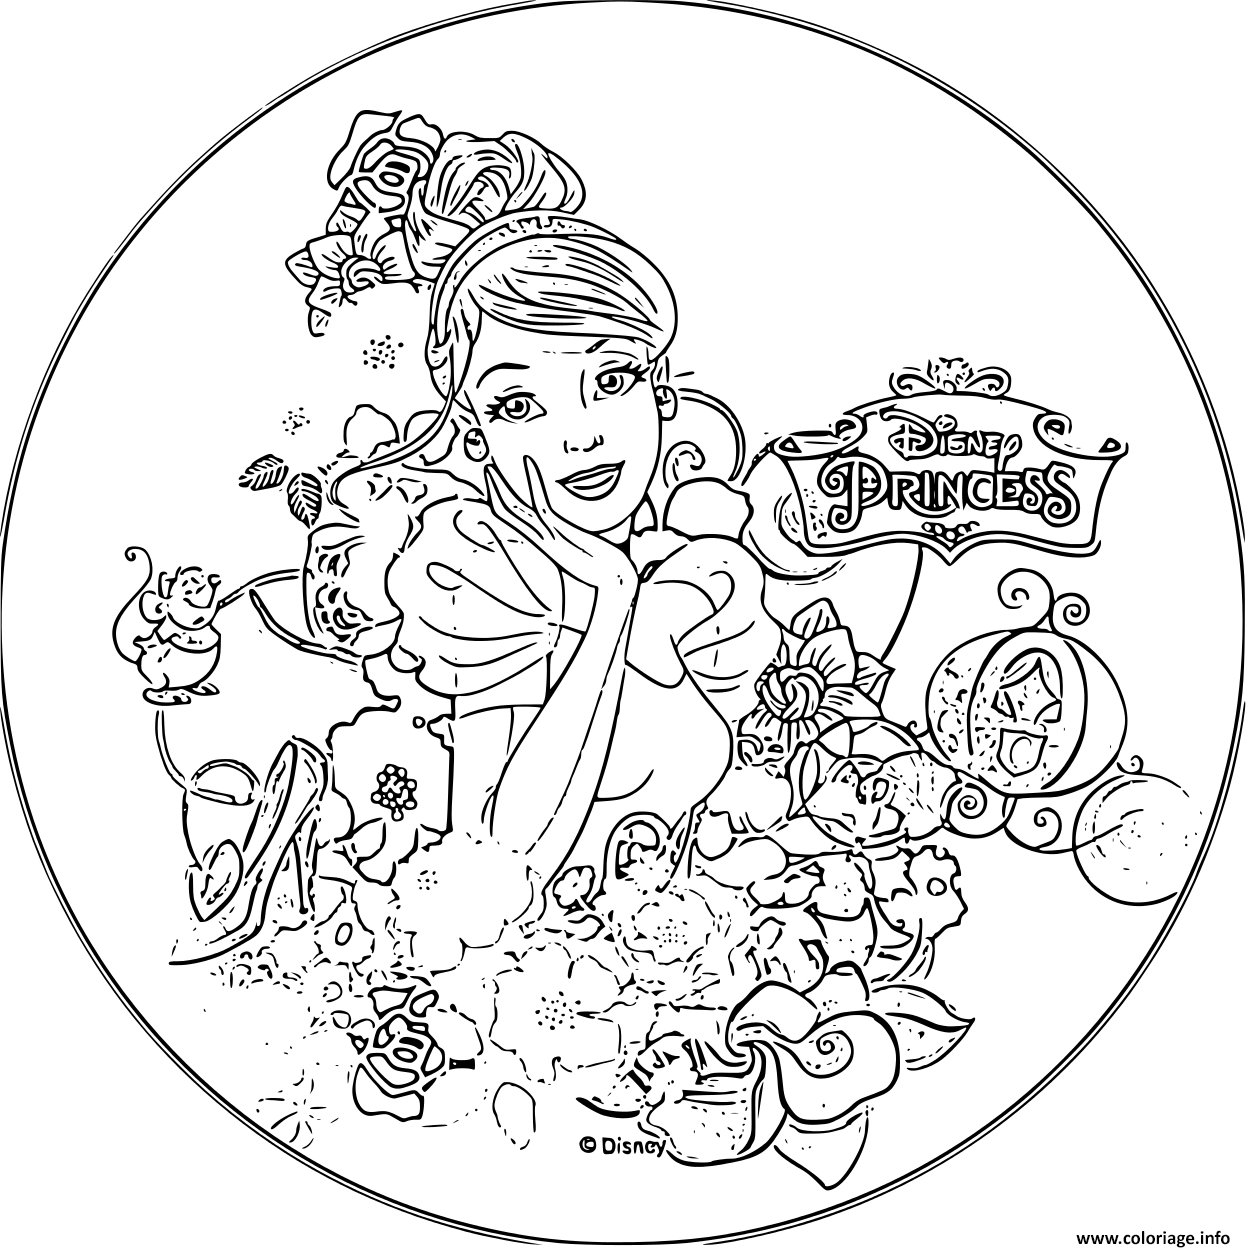 Coloriage Disney Princesse Cendrillon 1950 Dessin Princesse Disney À tout Coloriage Disney A Imprimer 